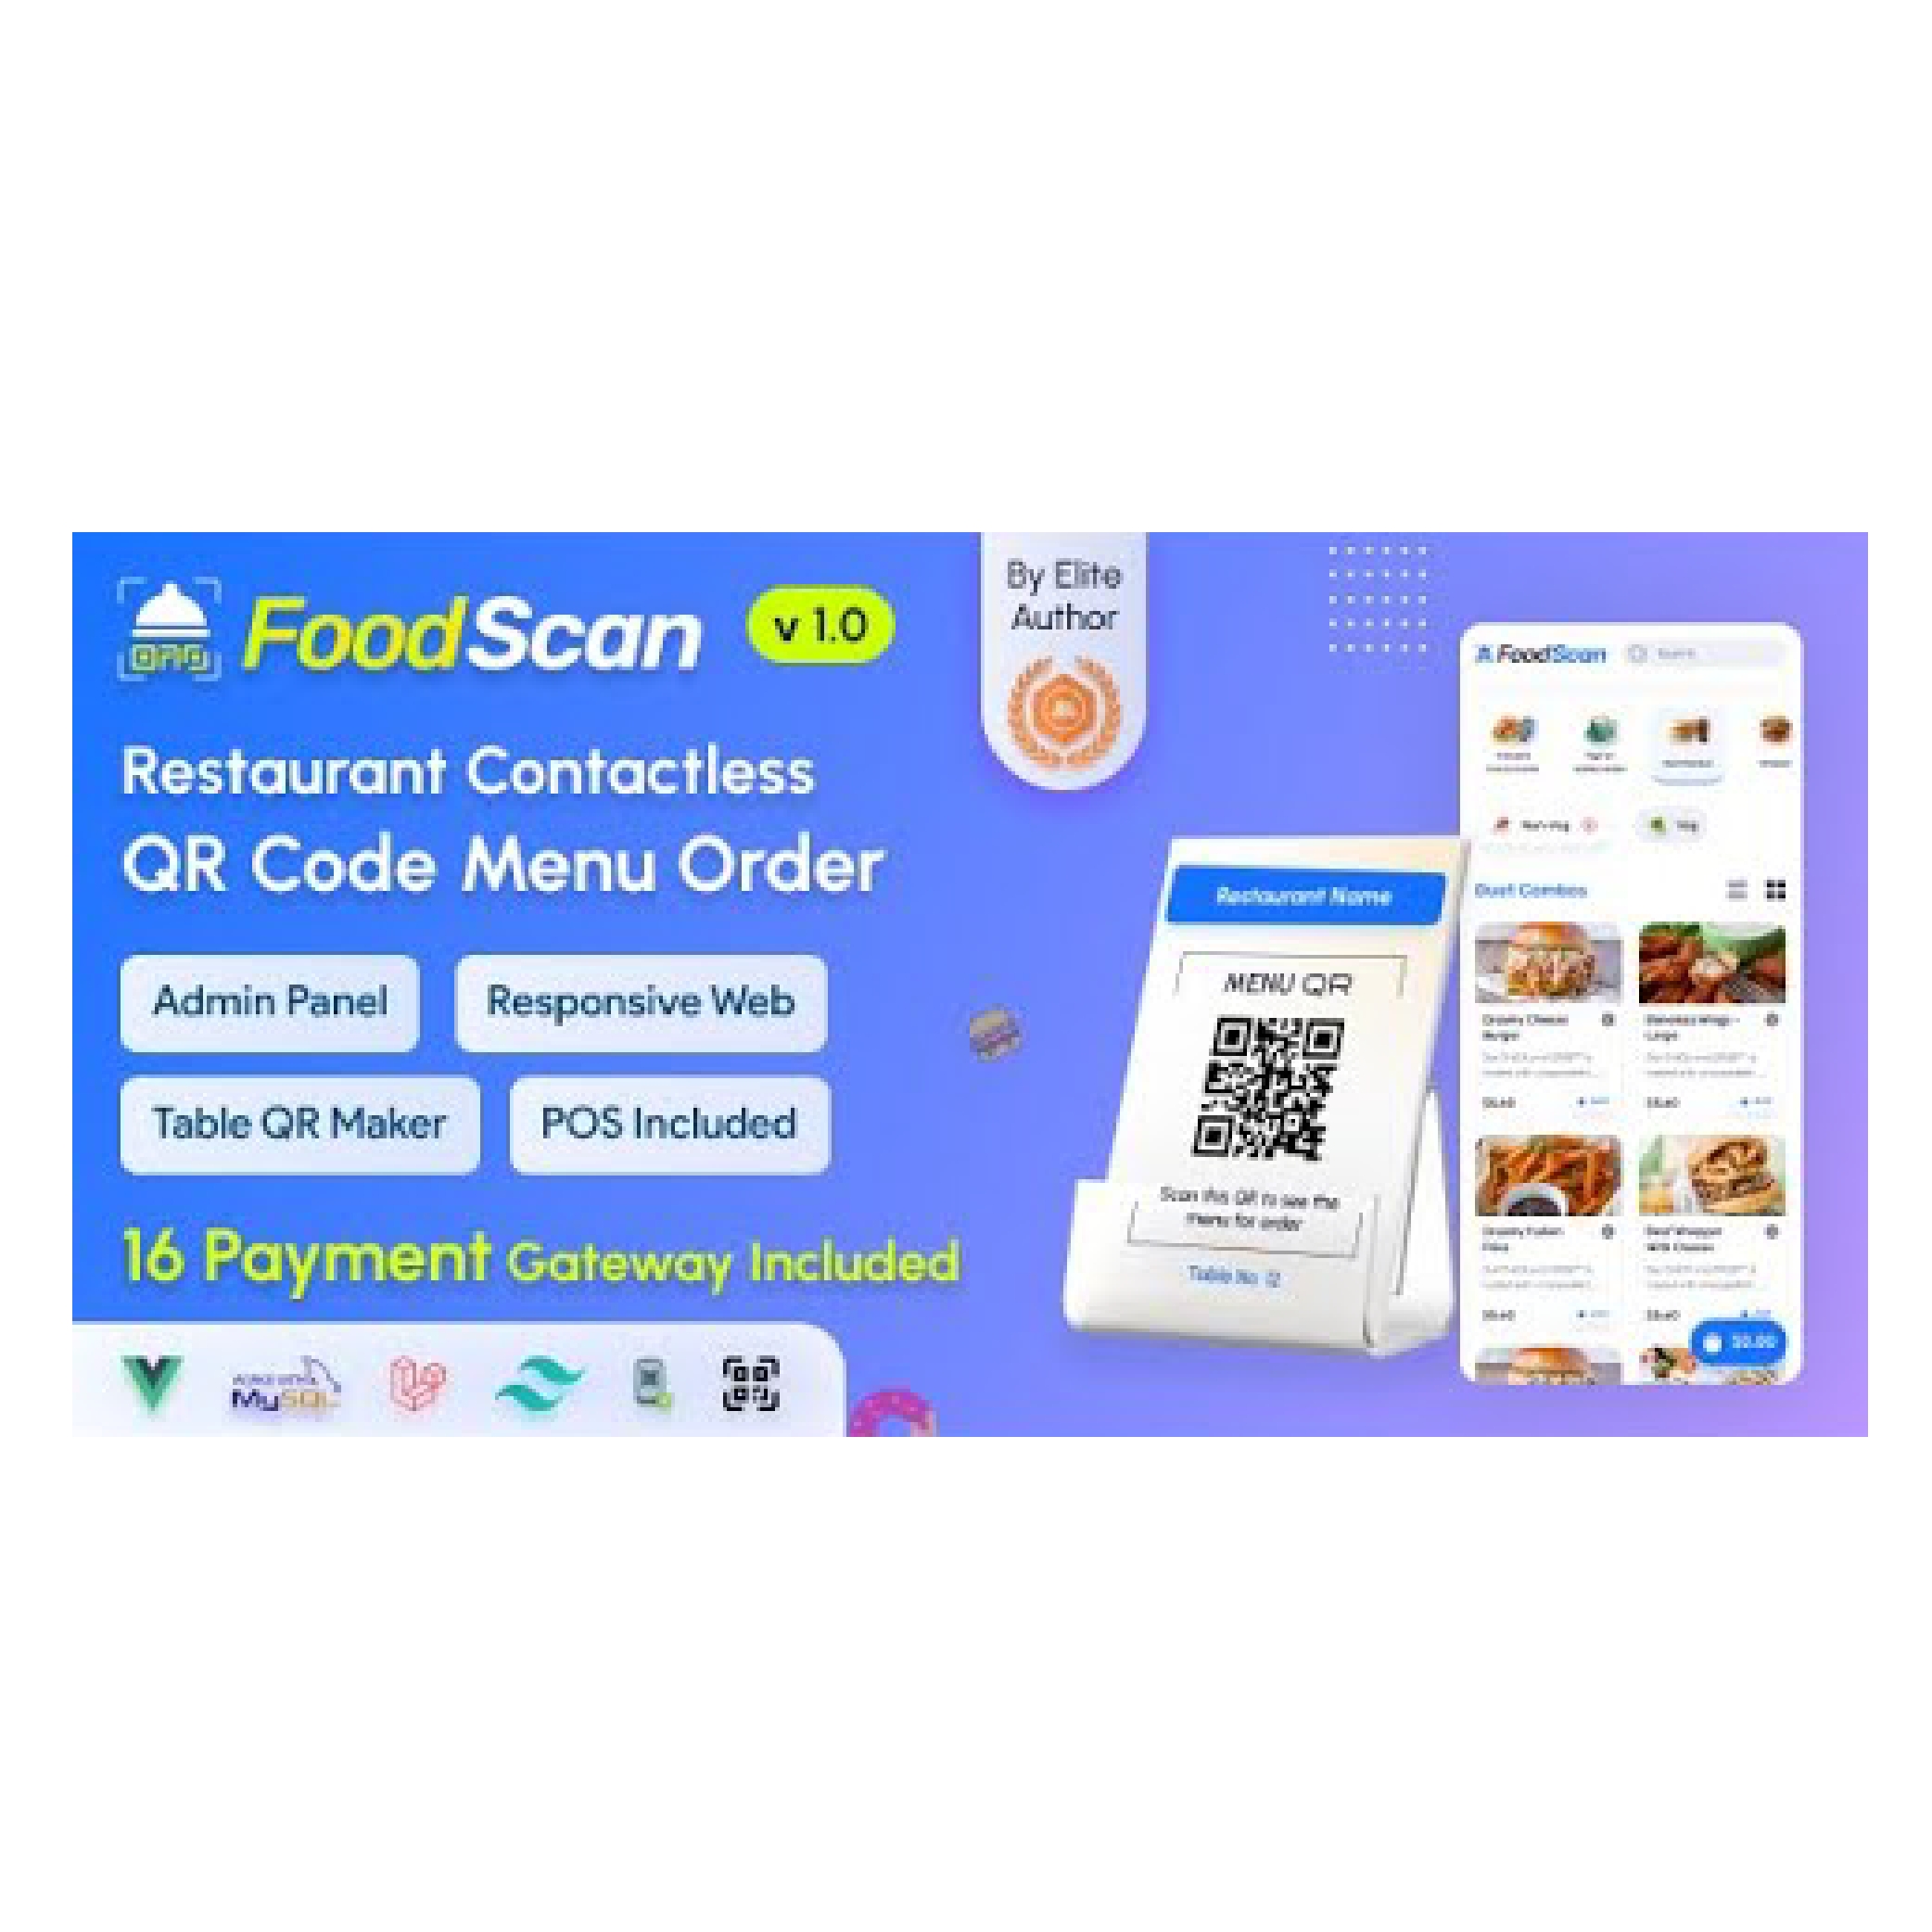 隆重推出 FoodScan – 非接触式餐桌点餐系统和 QR 菜单制作工具。顾客只需扫描二维码、浏览菜单、下订单即可享用。安全无缝的用餐体验。